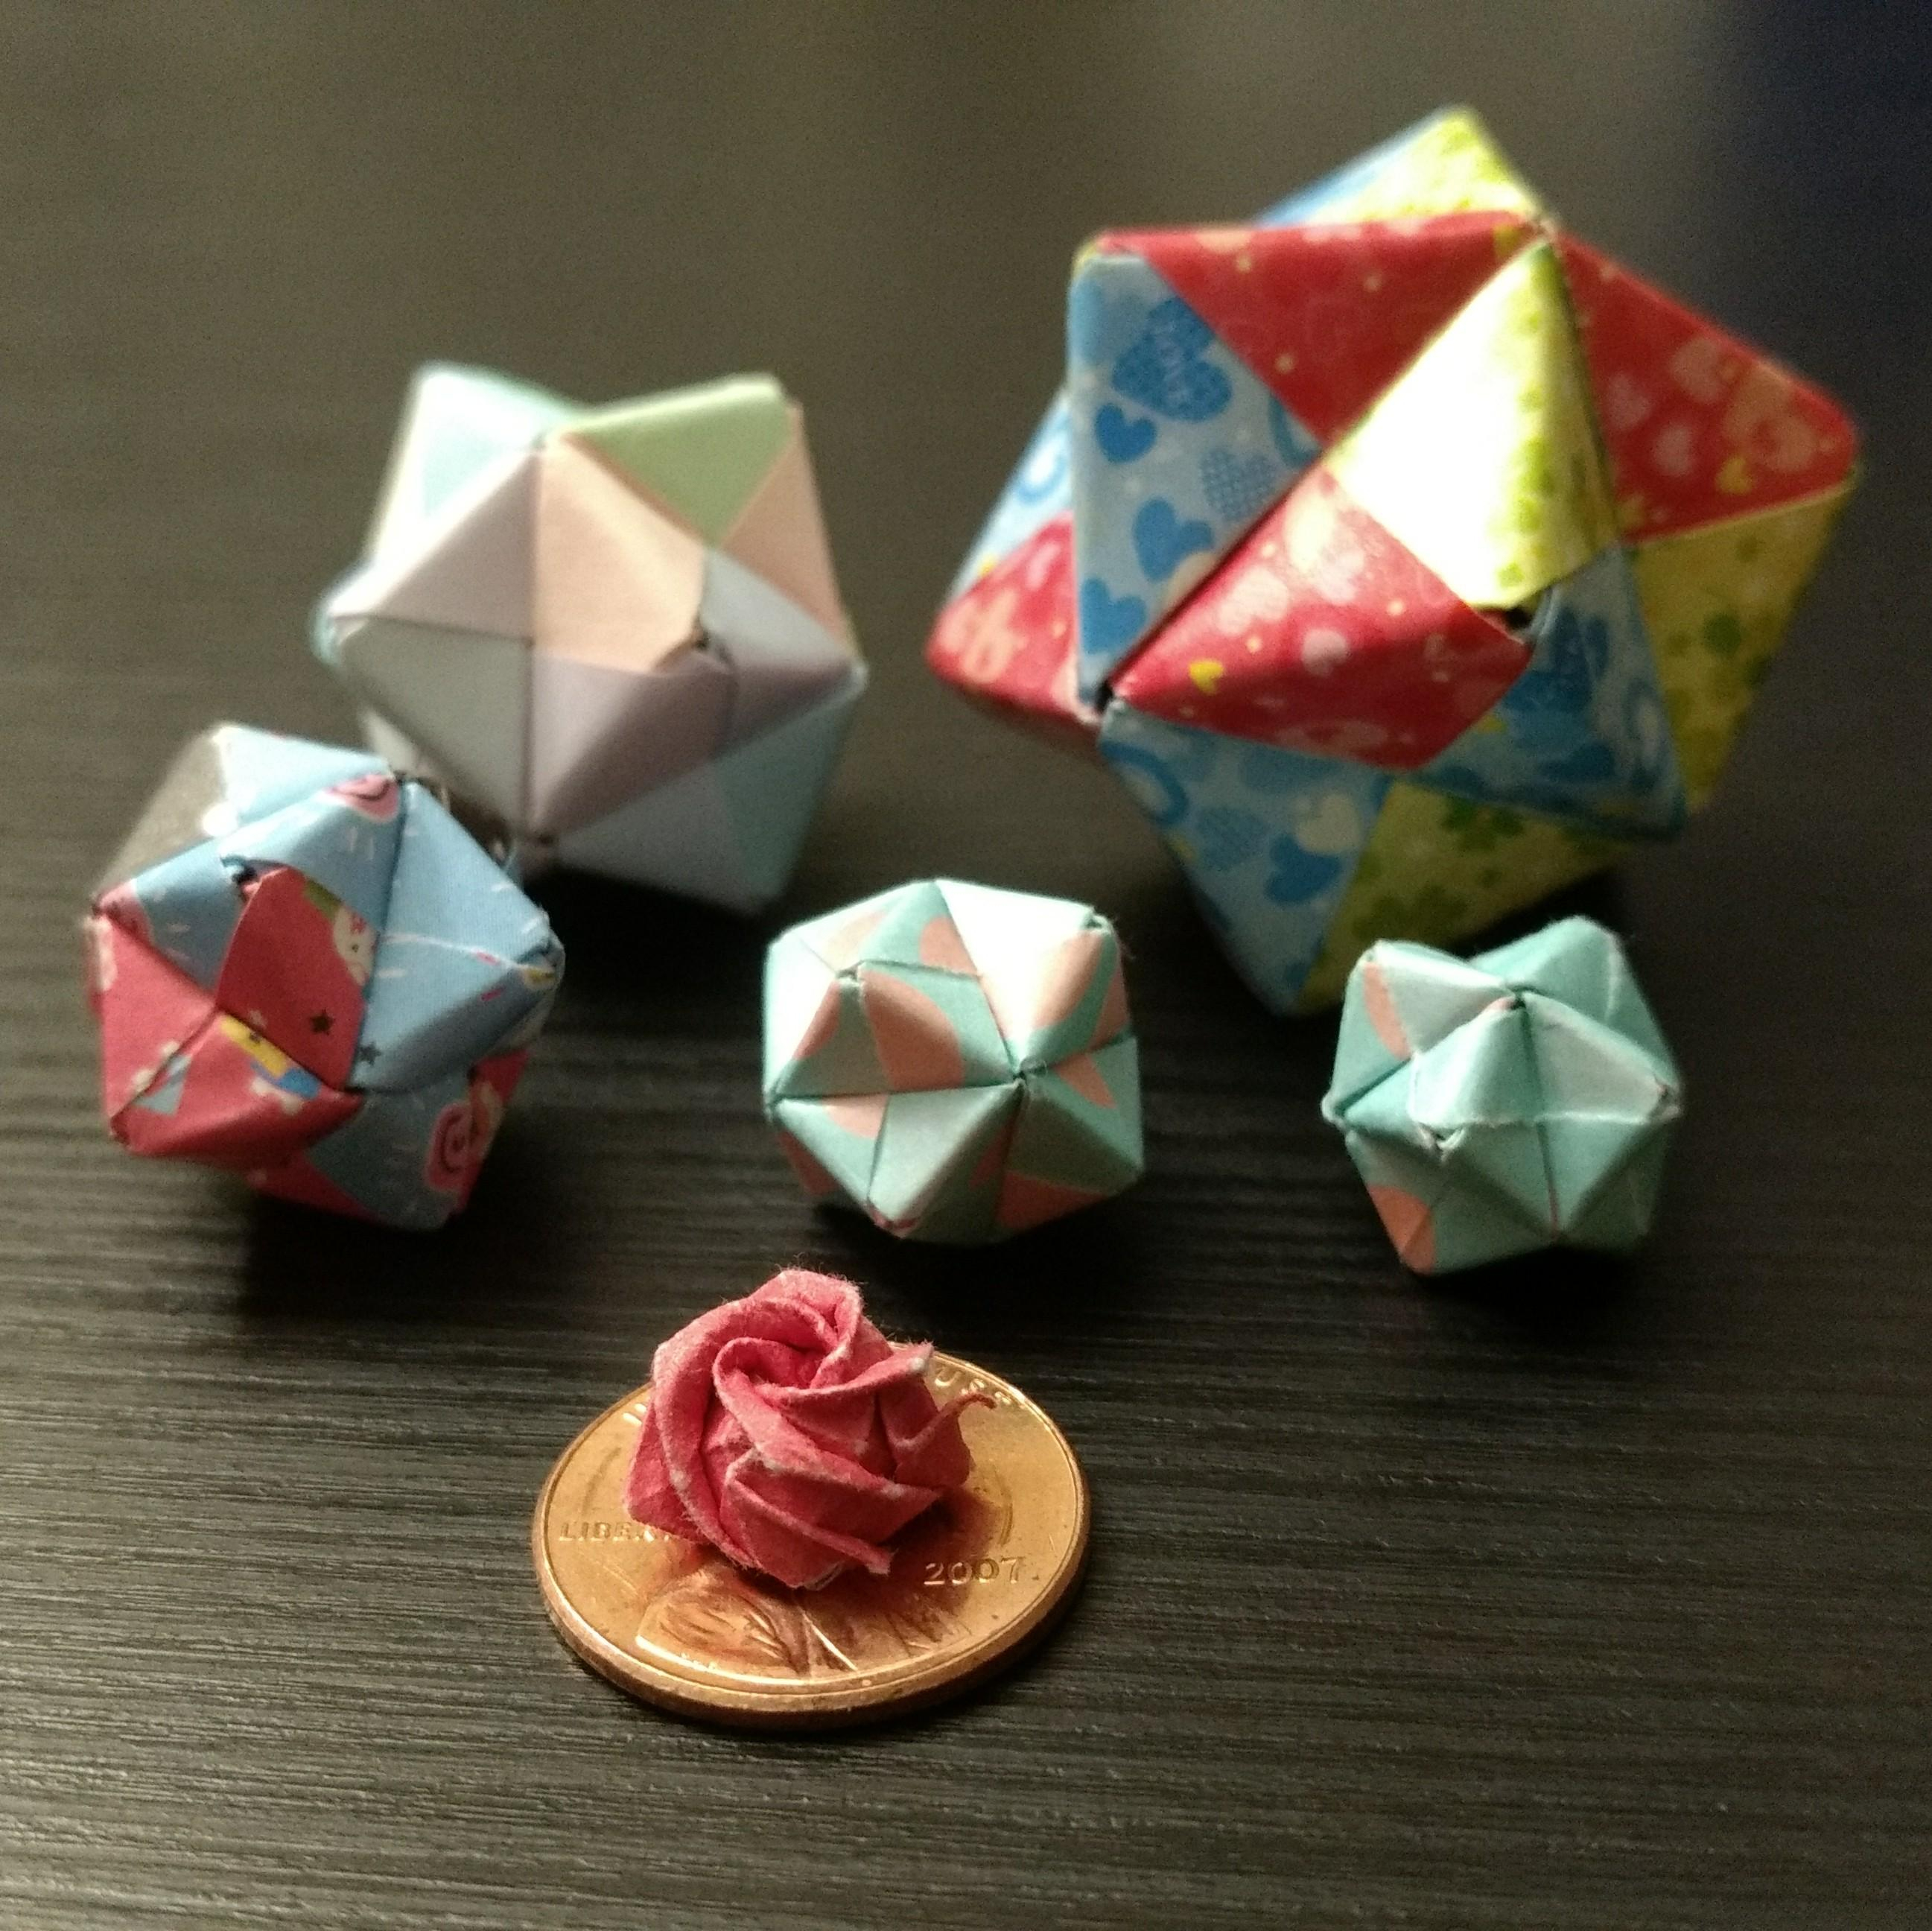 Origami Kawasaki Rose Kawasaki Rose On A Penny And Sonobe Balls Origami